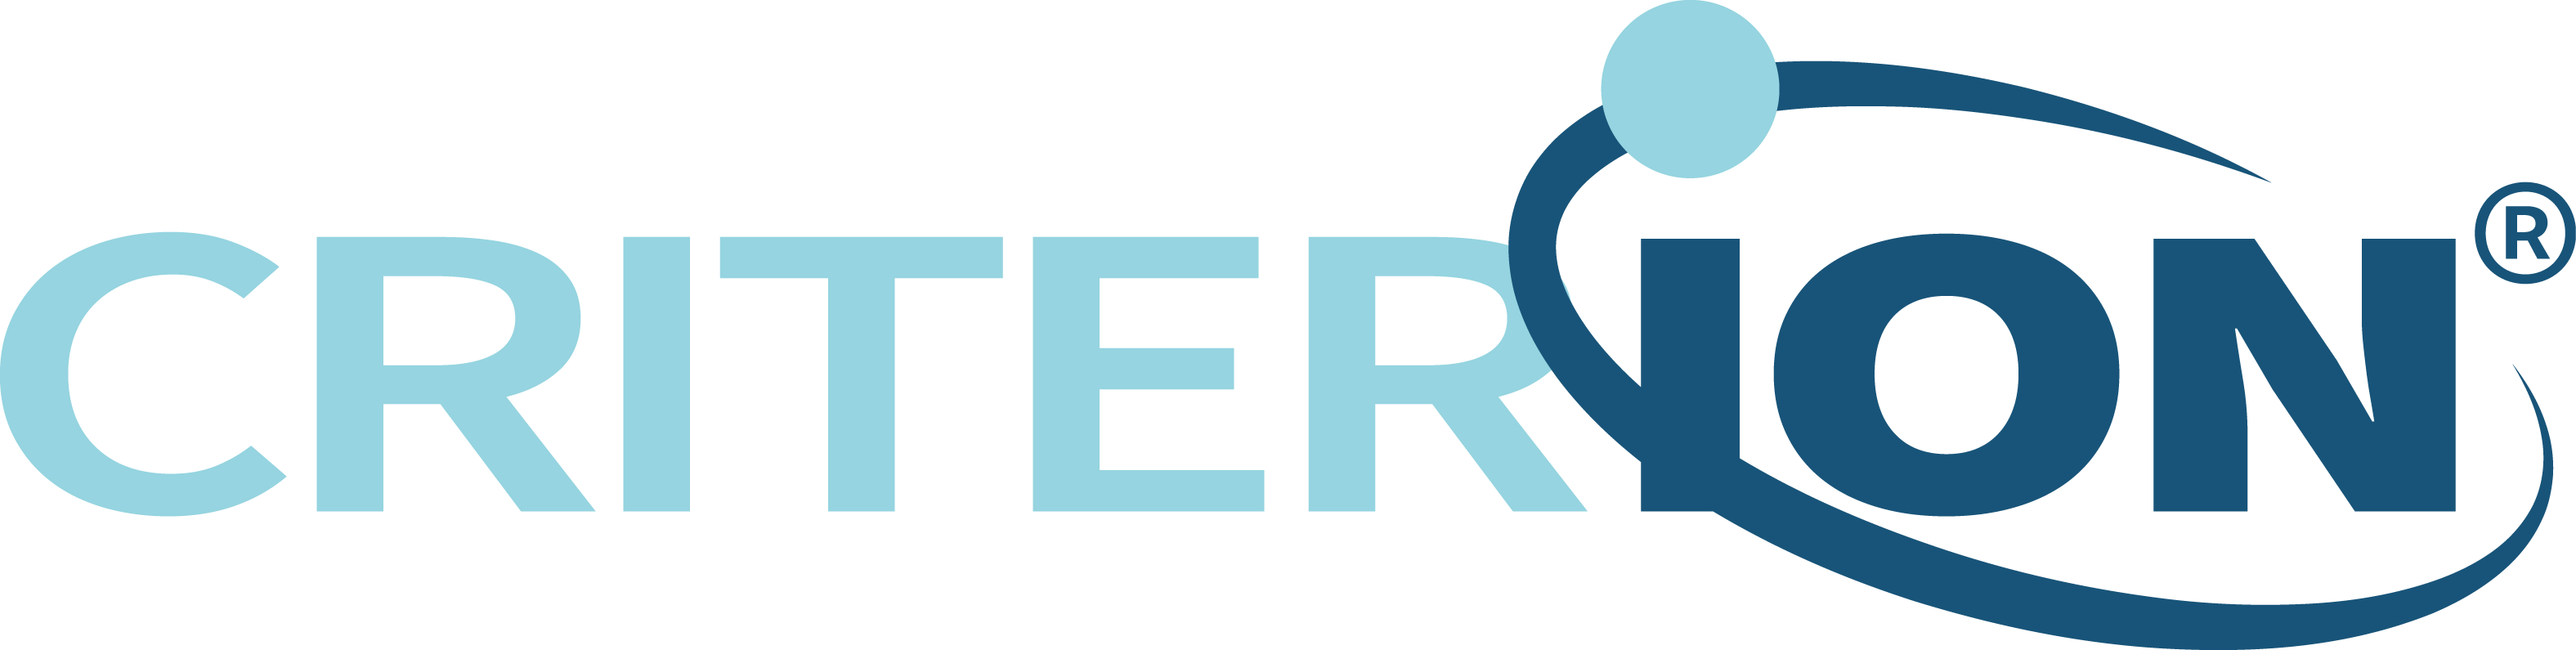 CRITERIUM-logo